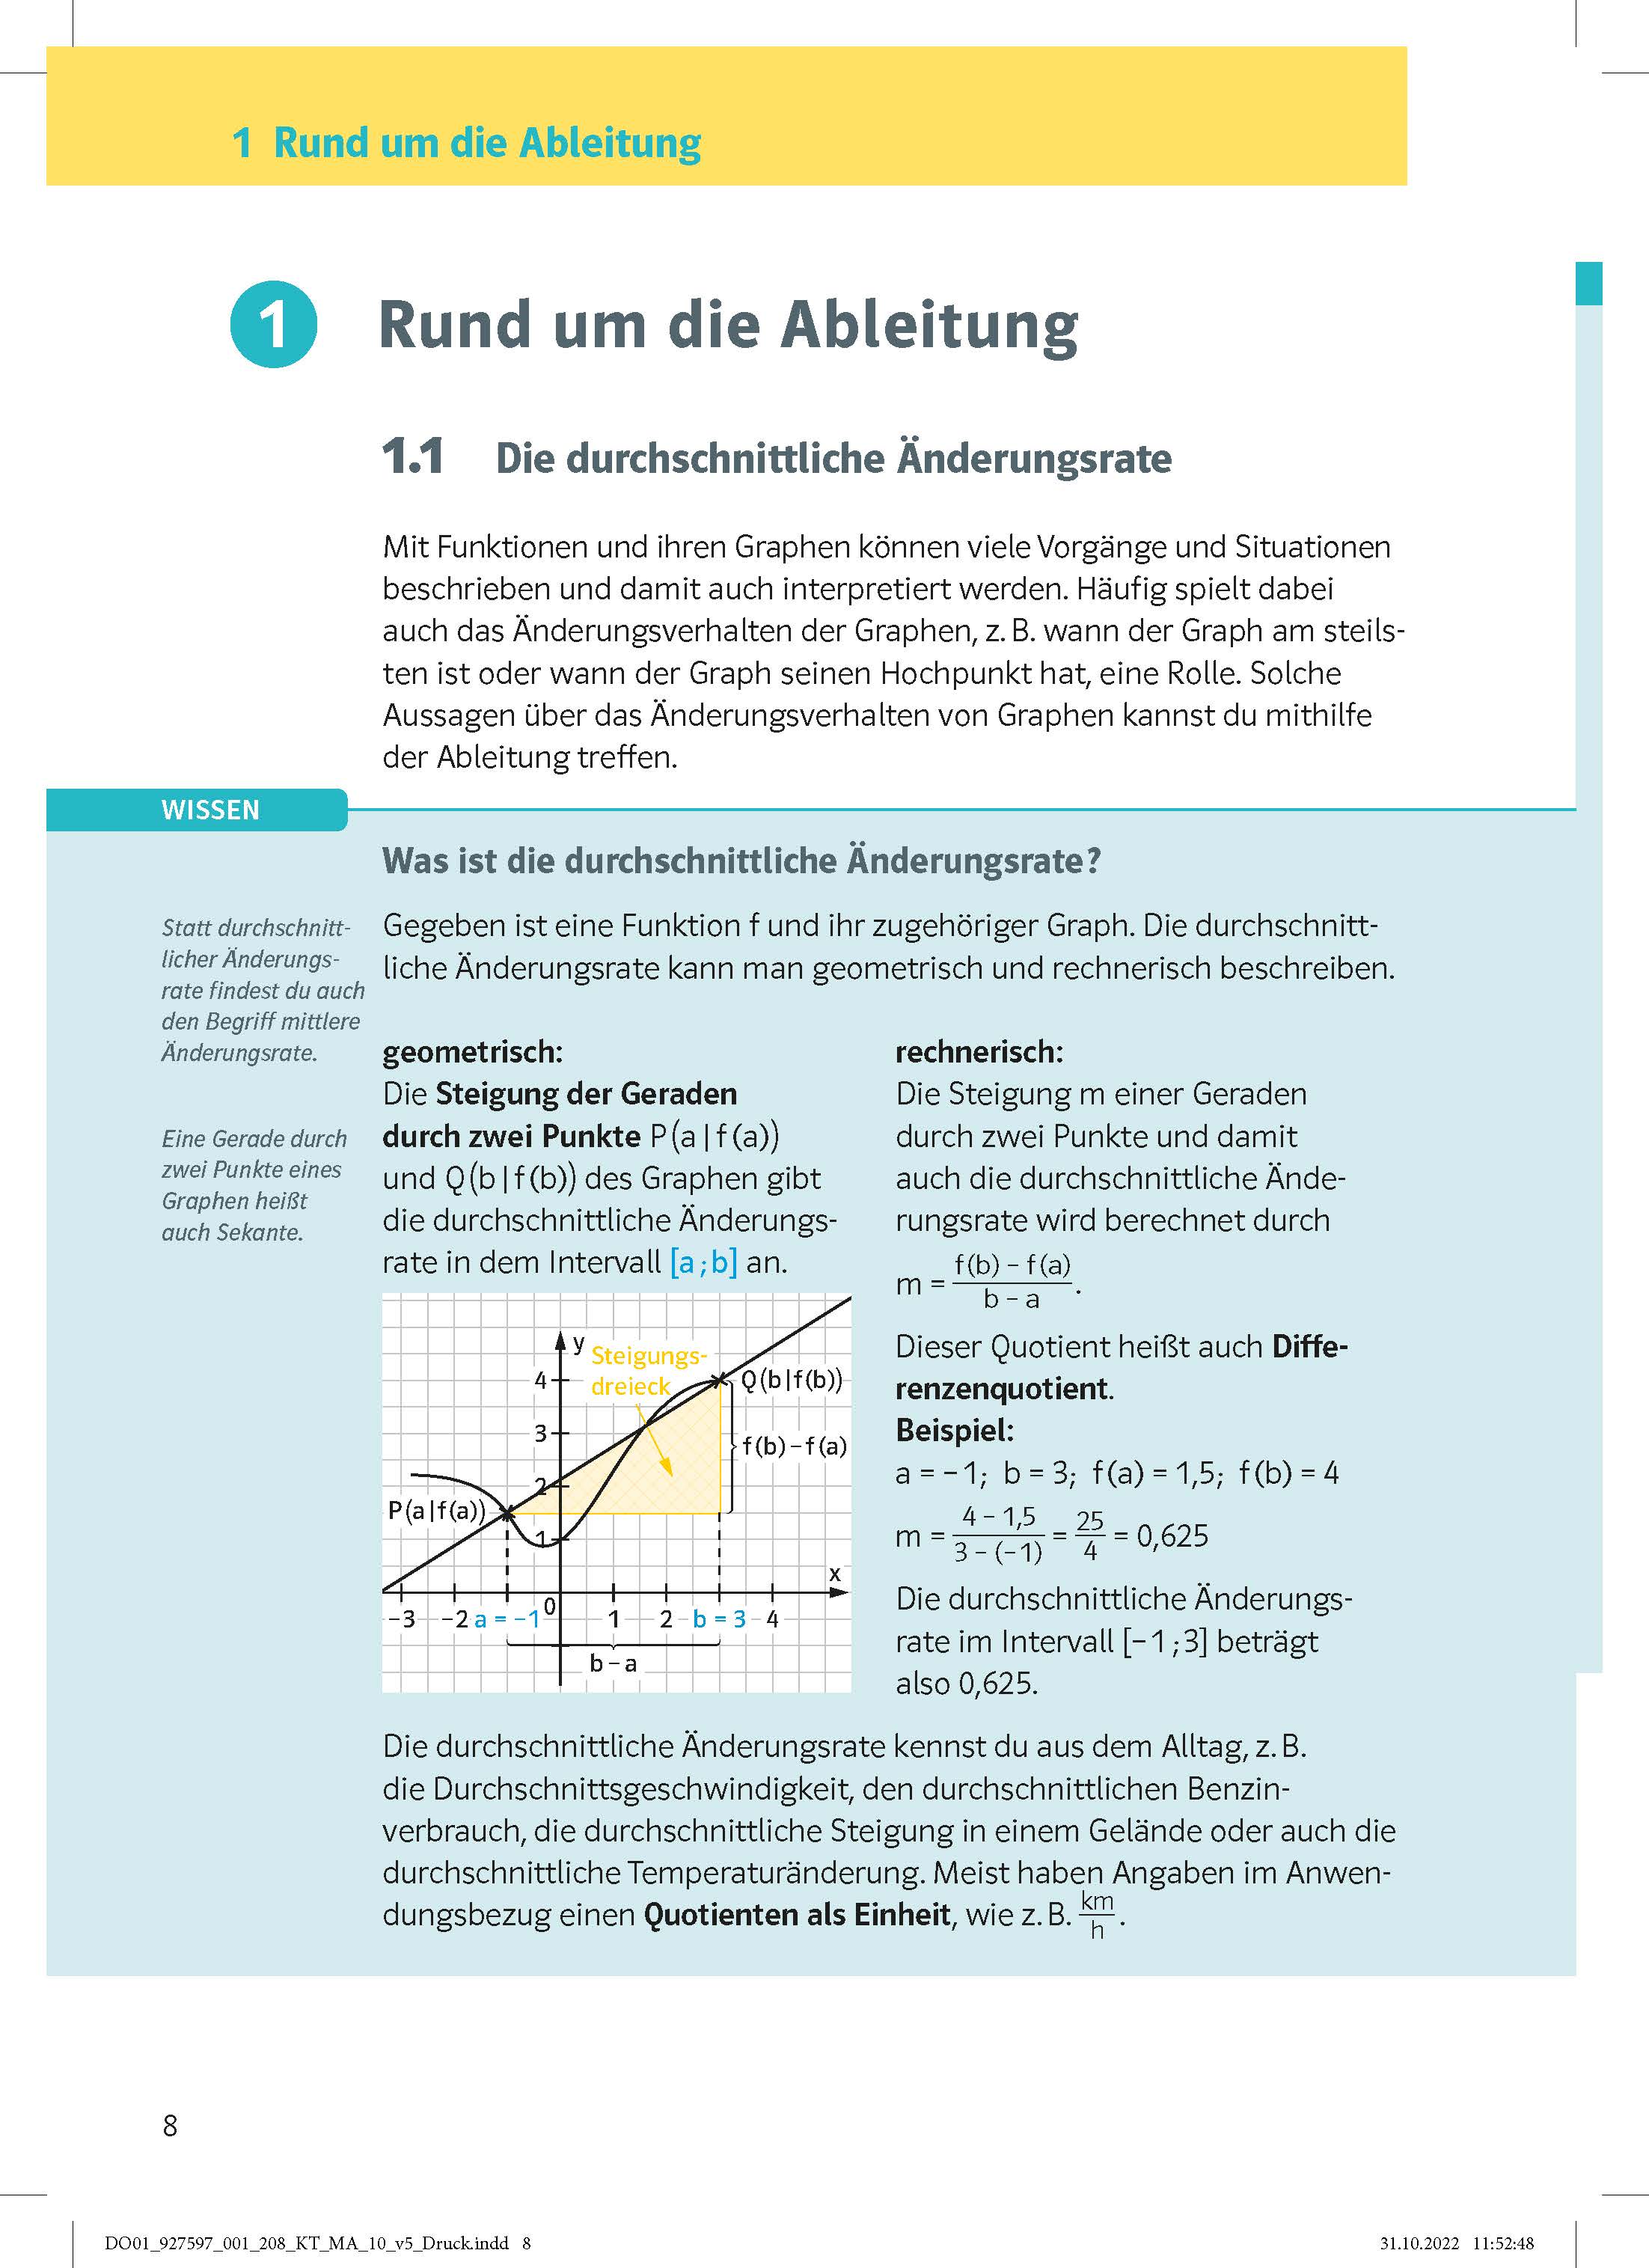 Klett KomplettTrainer Gymnasium Mathematik 10. Klasse